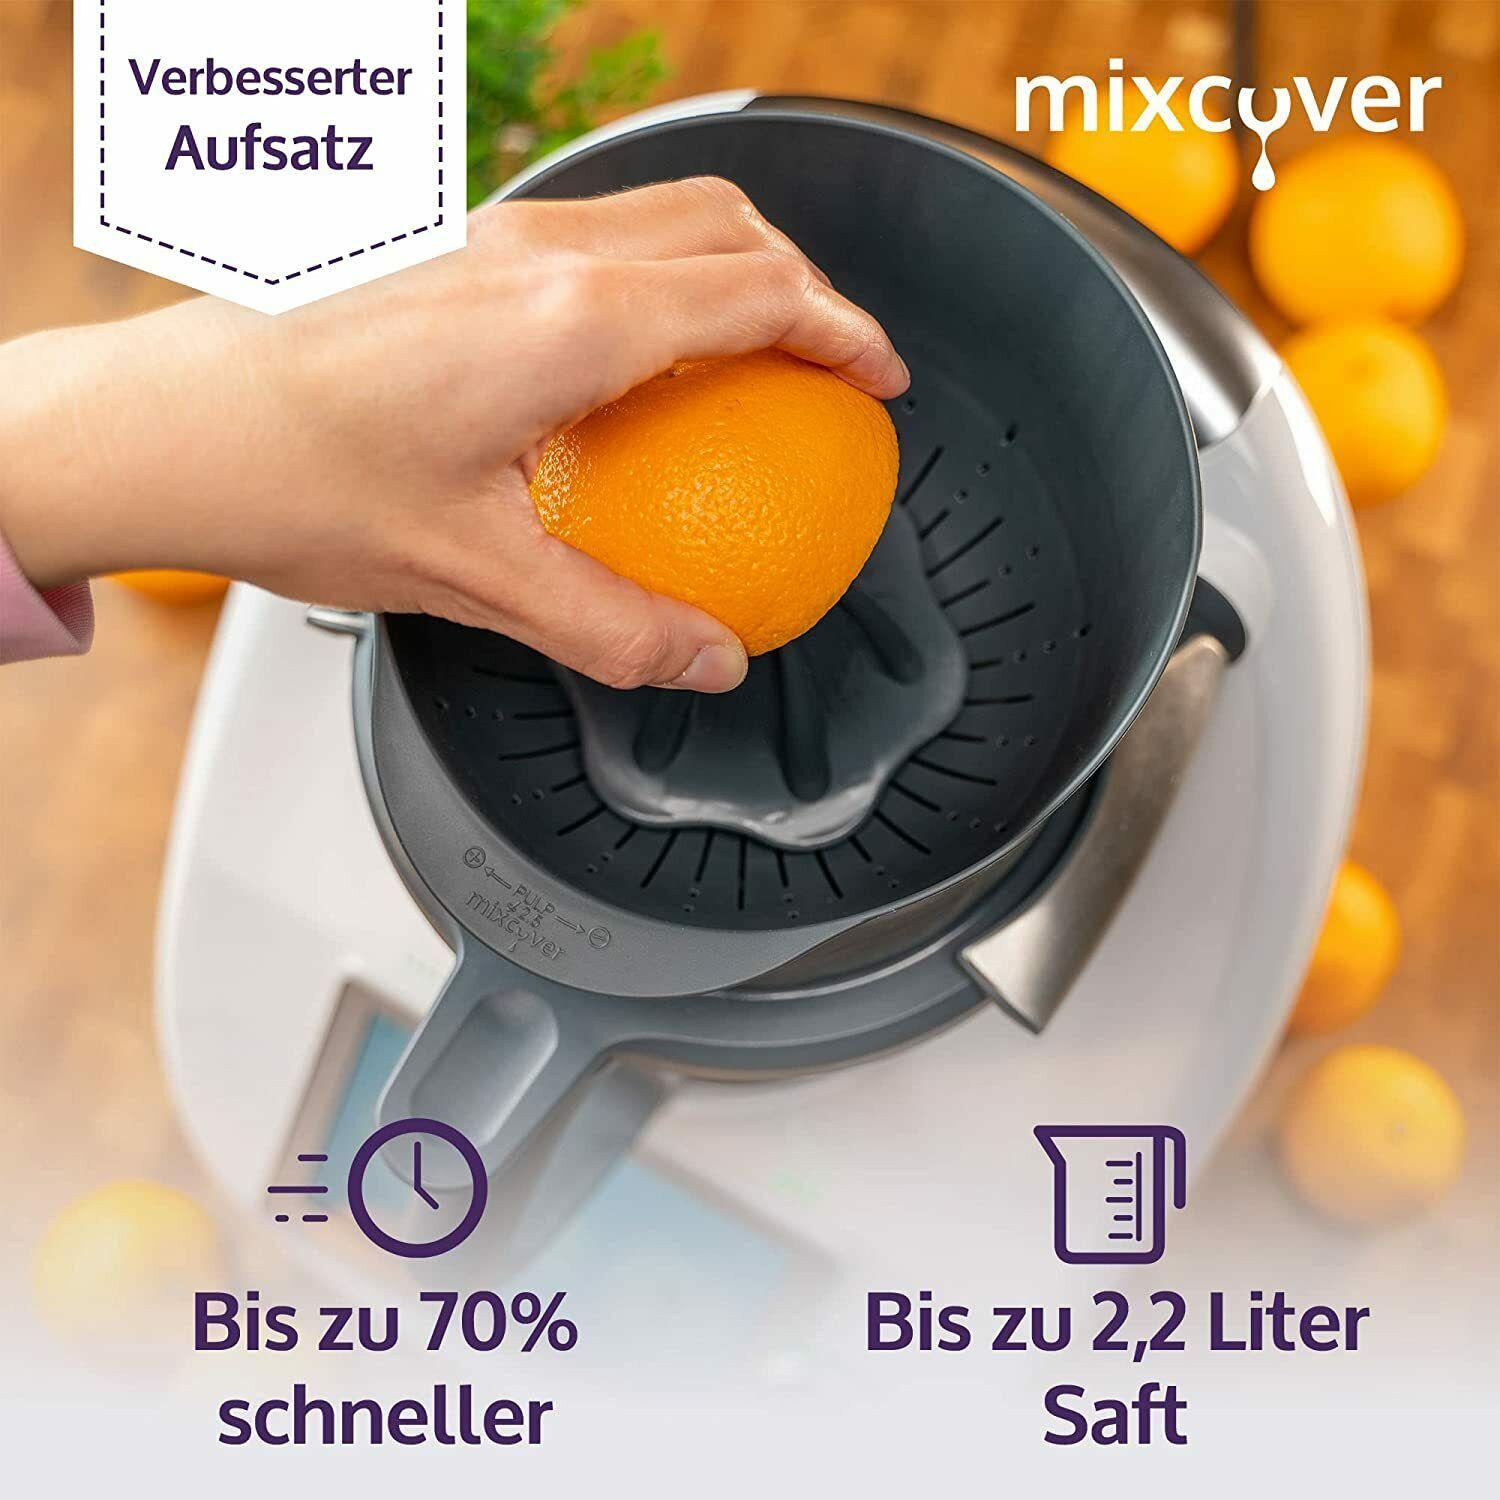 mixcover Juice Press Orange Press Citrus Press Compatibile con Vorwerk  Thermomix / Bimby TM6 e TM5, semplicemente succo, spremiagrumi